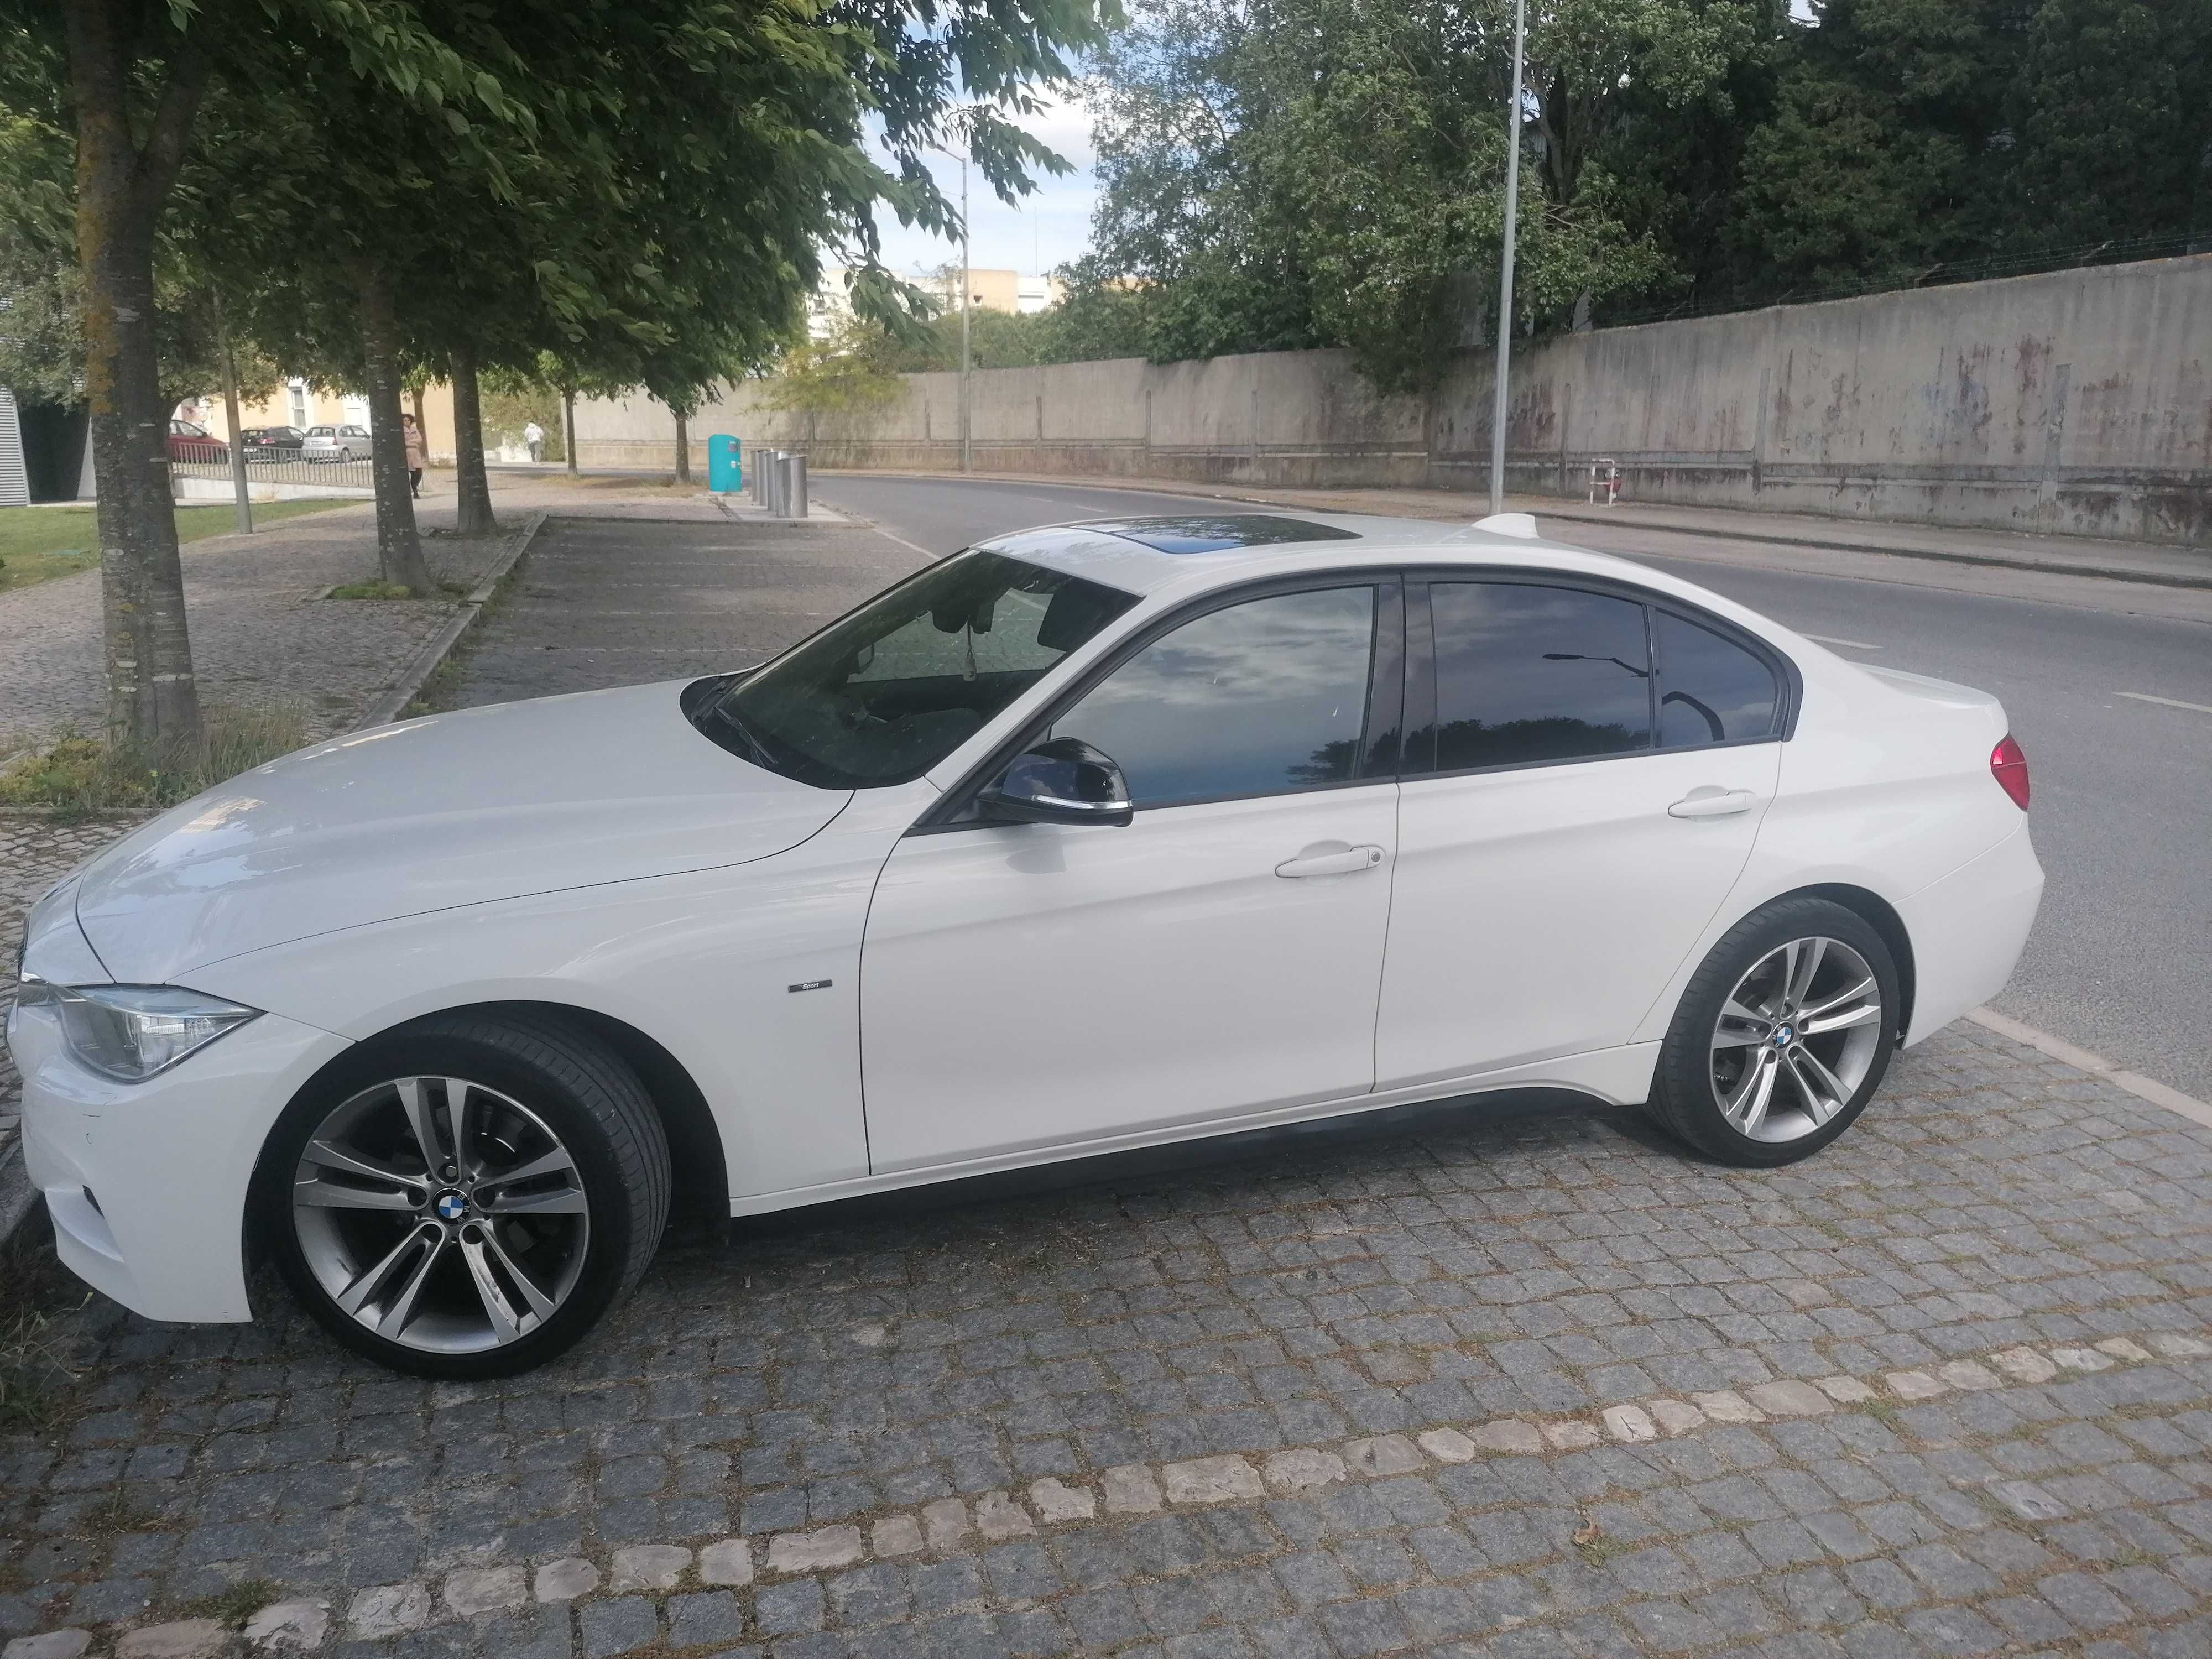 Vendo BMW 2012 impecável versão Sport